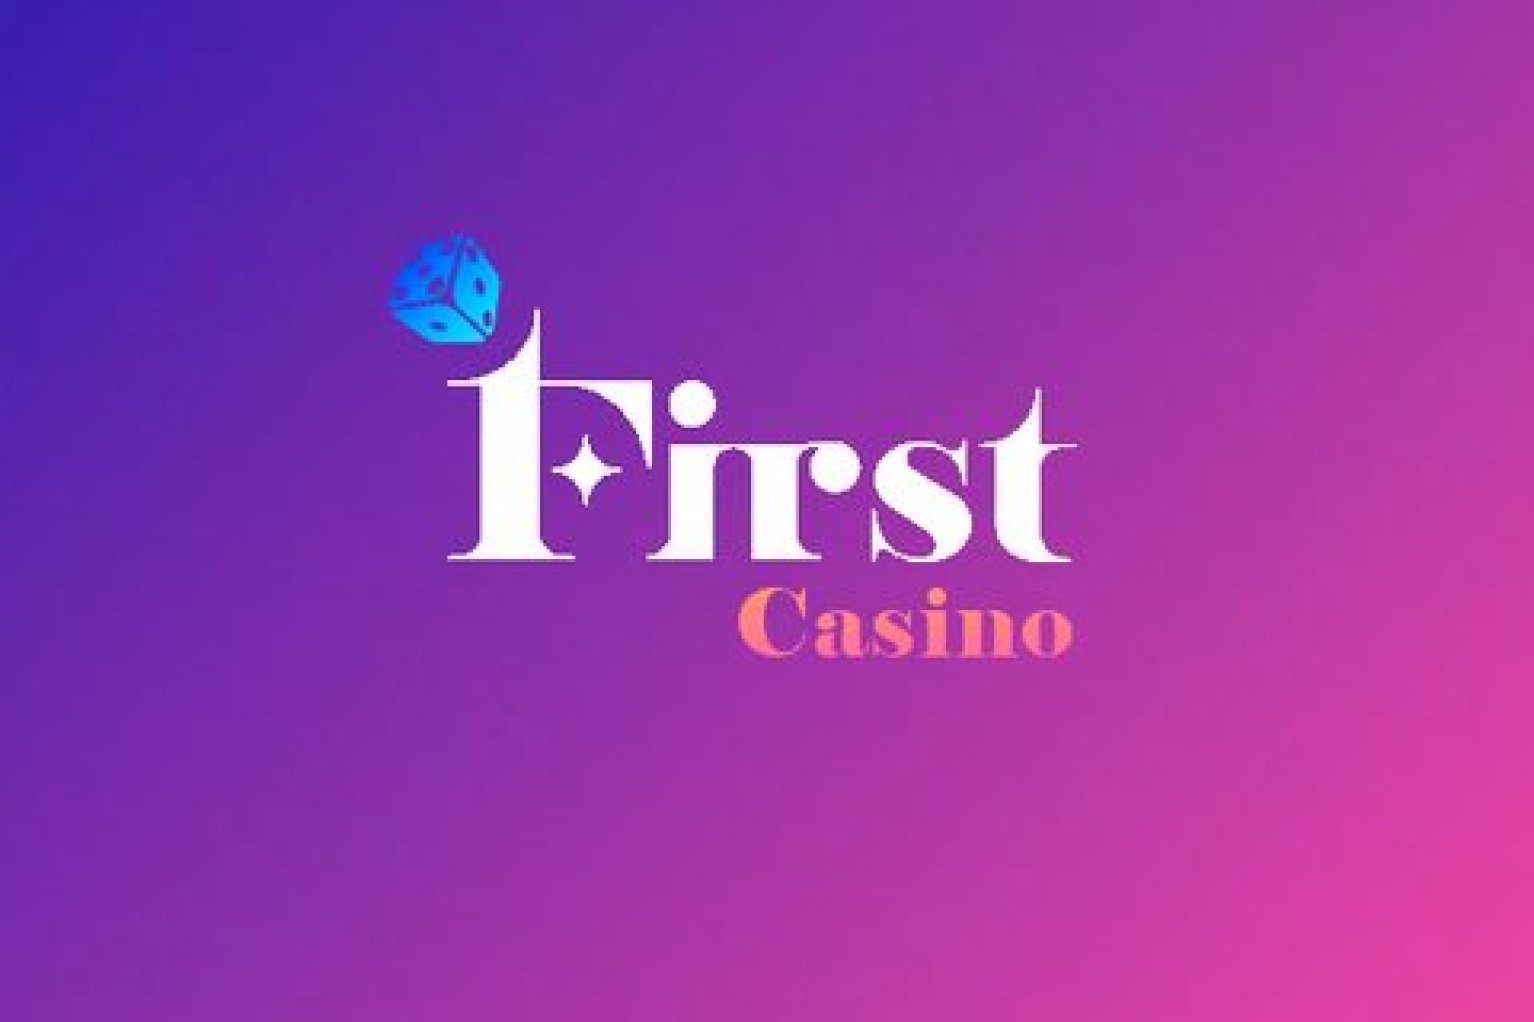 Г first. First Casino. First ua Casino. Casino1.